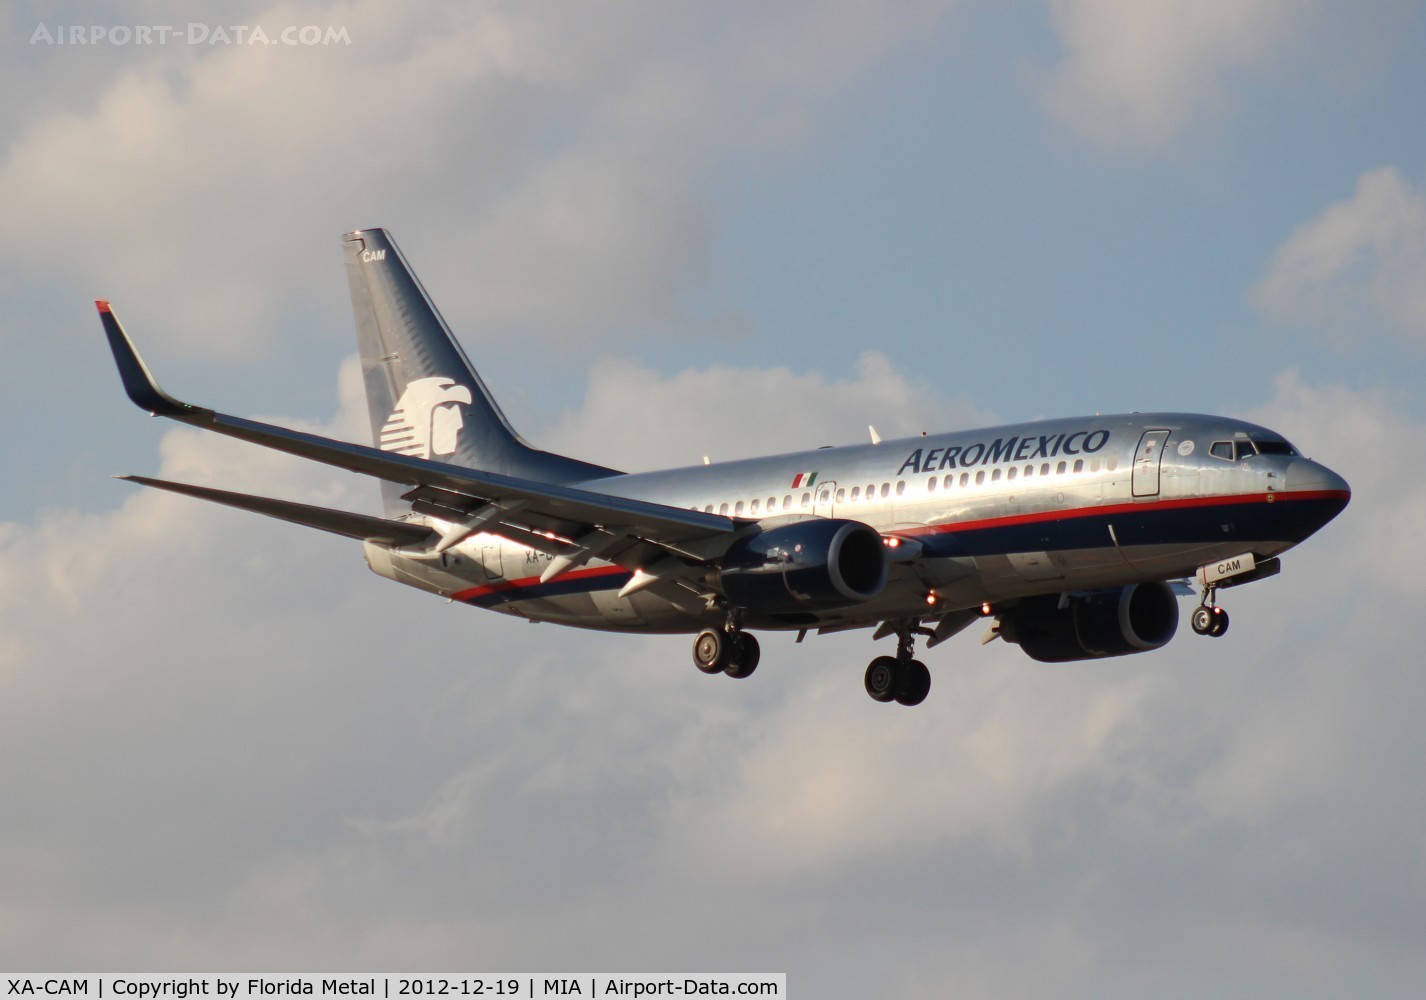 XA-CAM, 2003 Boeing 737-752 C/N 33785, Aeromexico 737-700